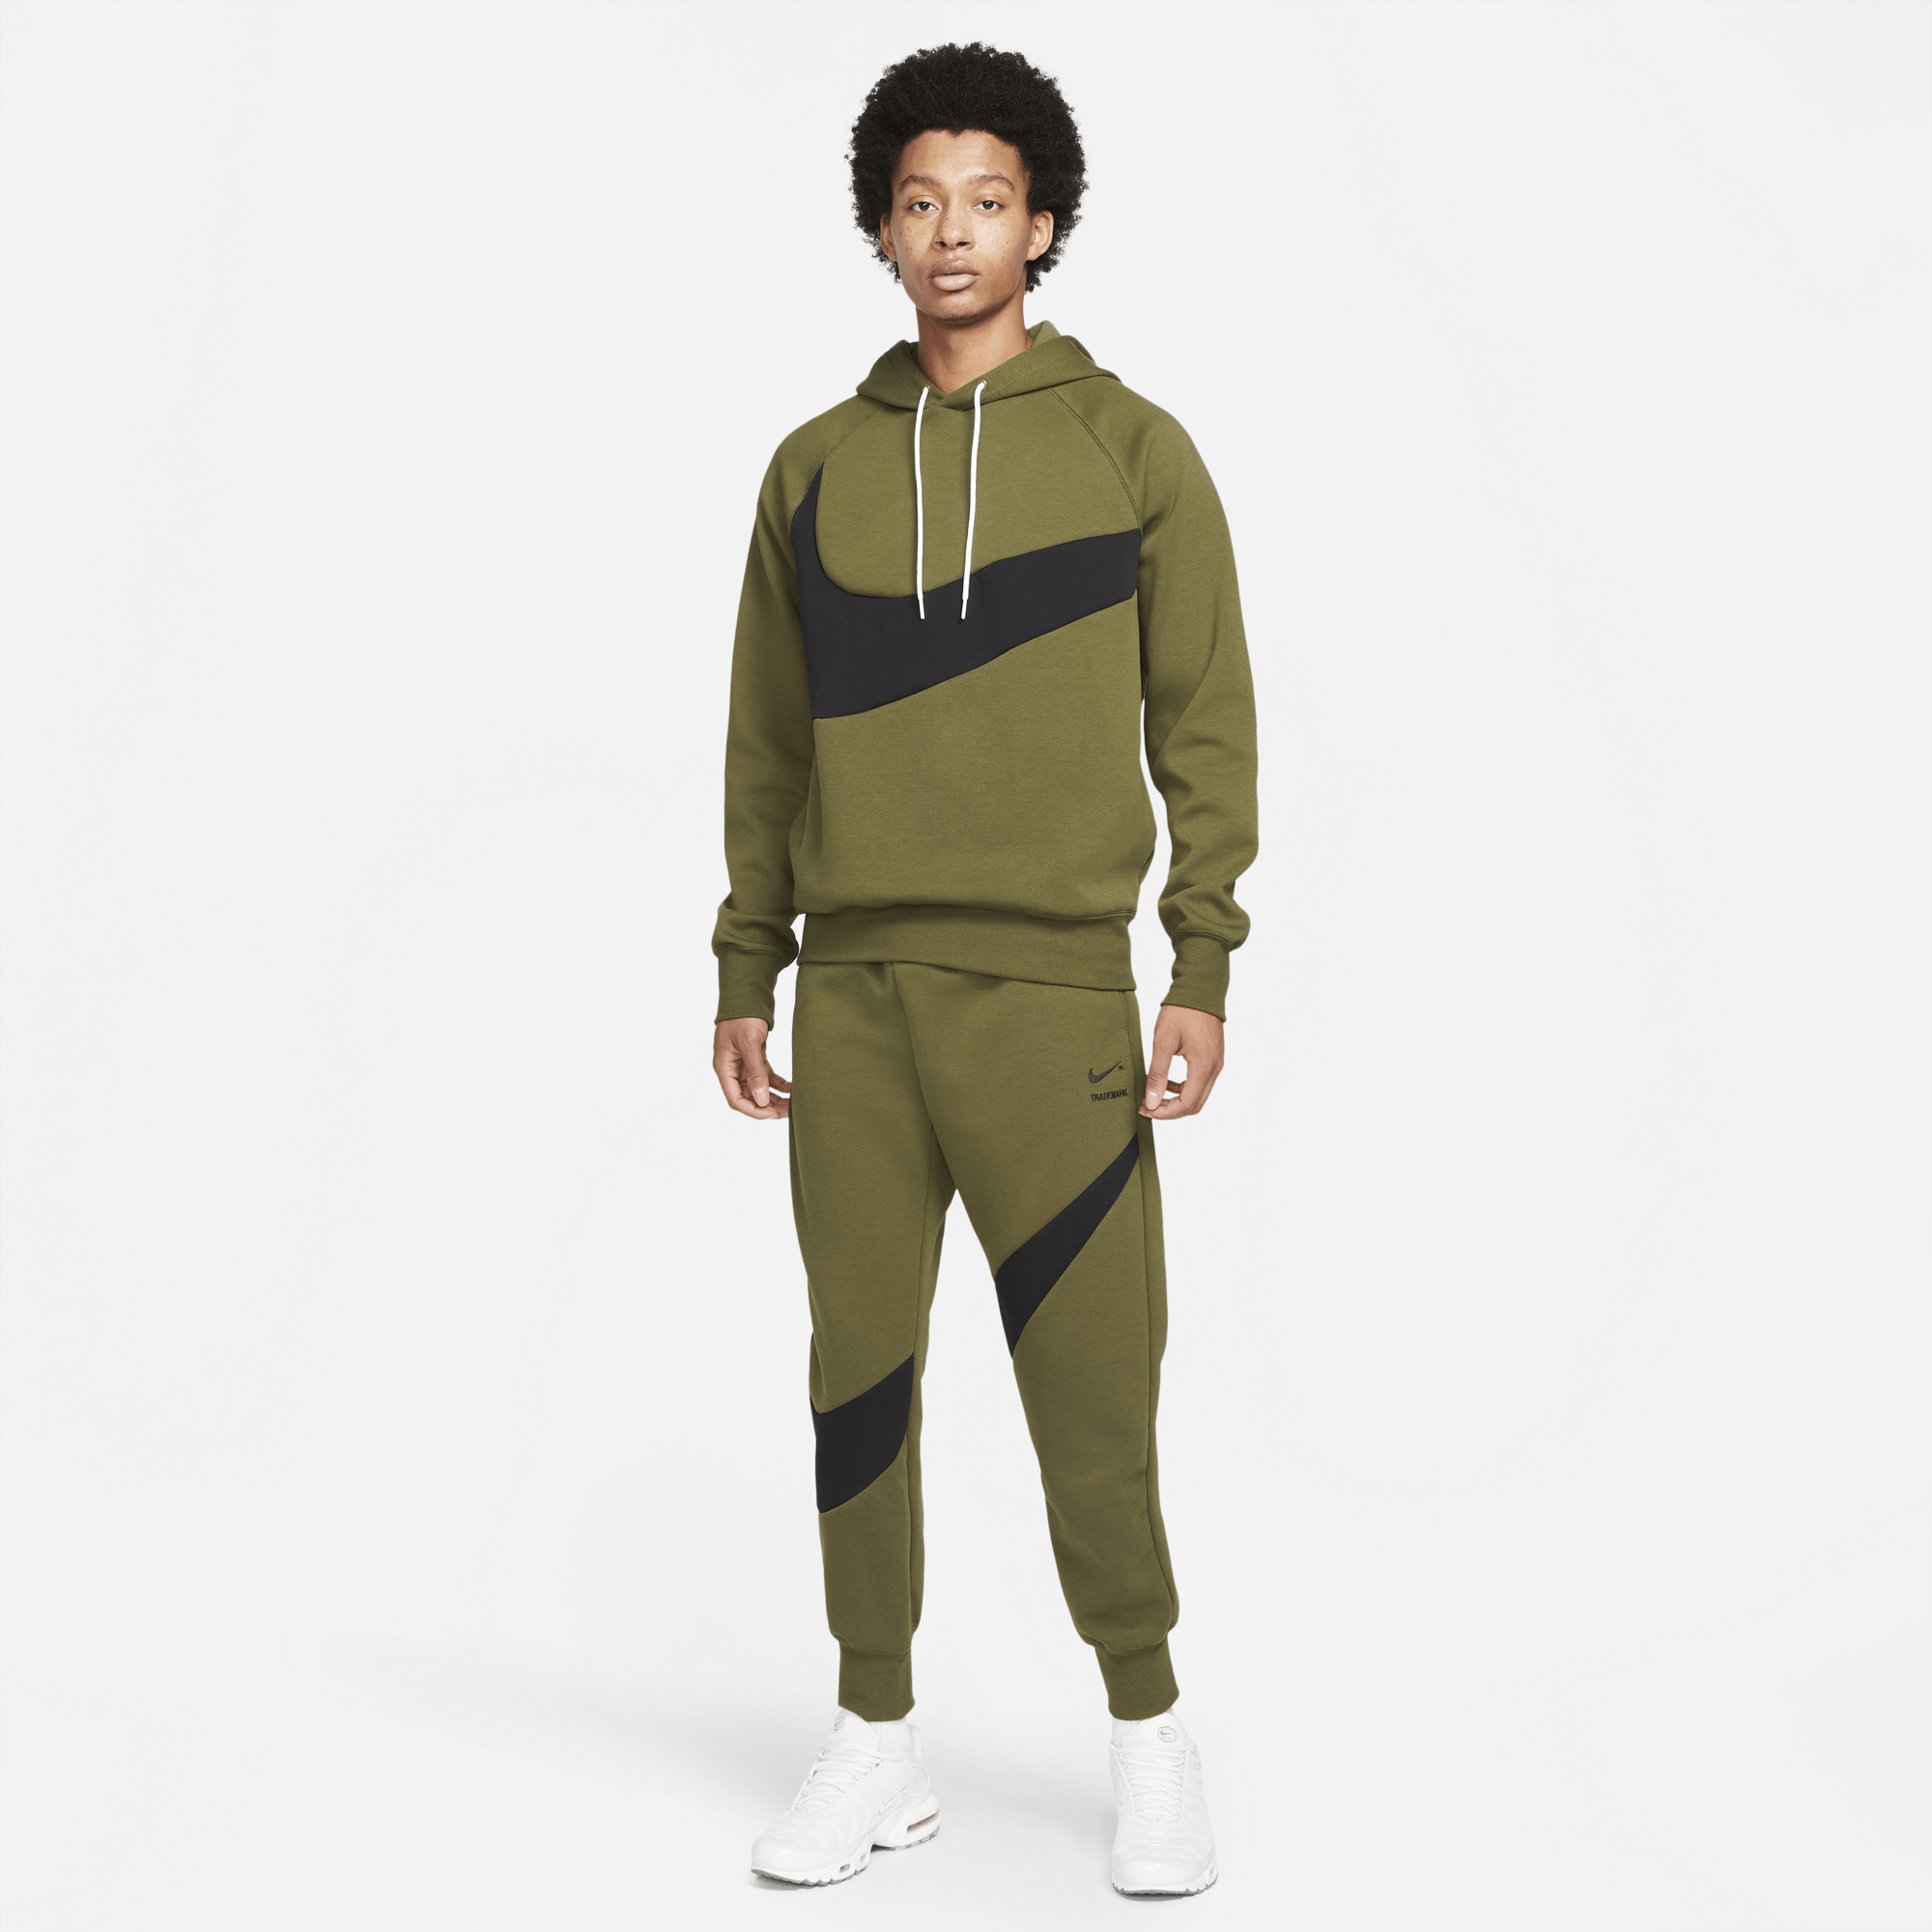 Nike Nike Sportswear Swoosh Tech Fleece Pants - Men's